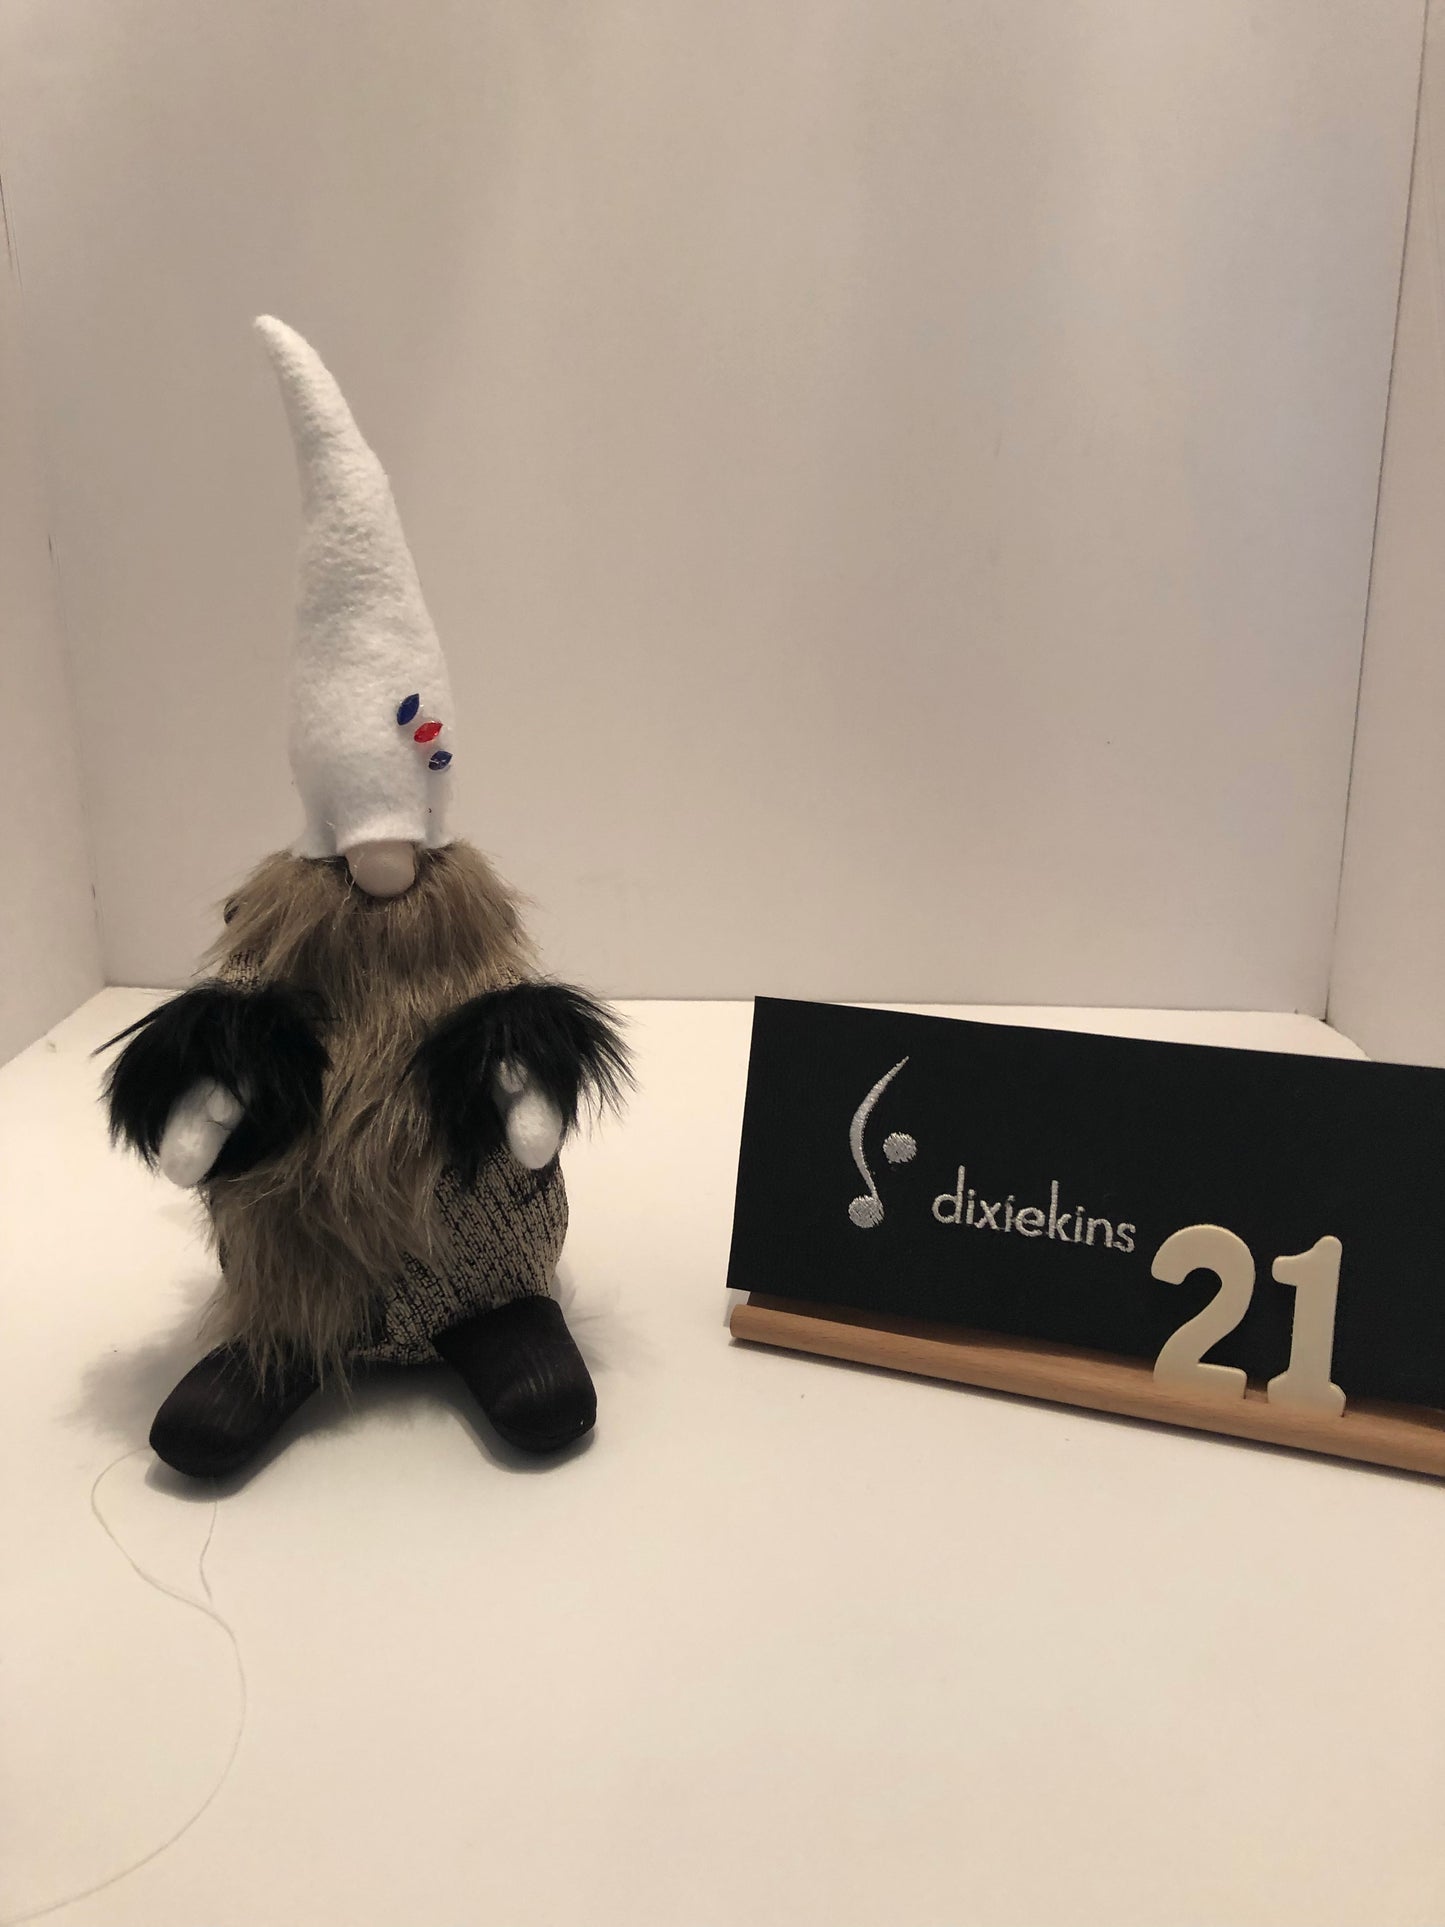 21. Decorative Gnome - Medium